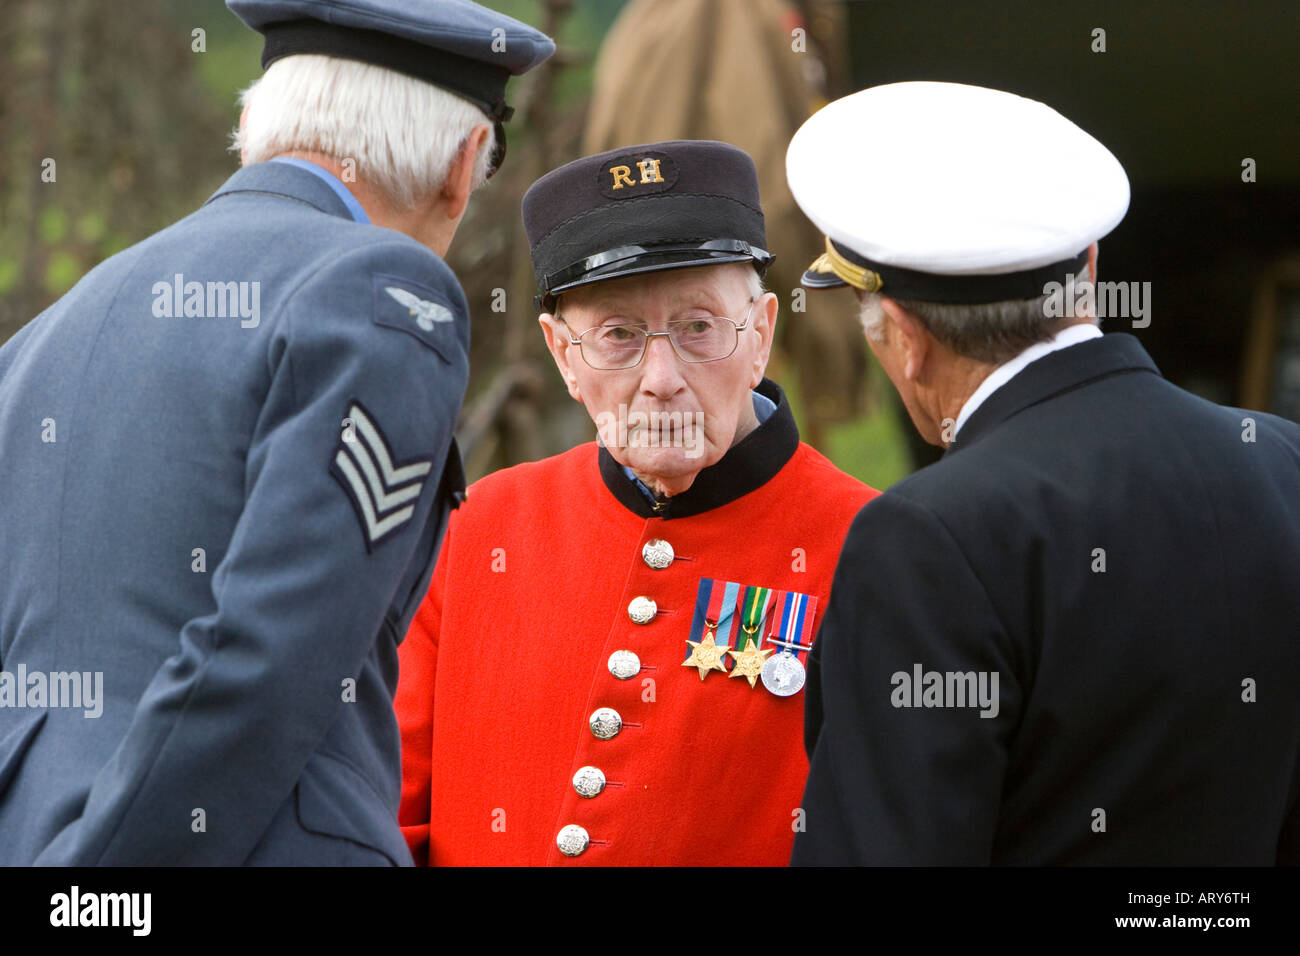 Chelsea-Rentner im Gespräch mit bewaffneten Sevices Offiziere auf WWII Reenactment Veranstaltung Stockfoto